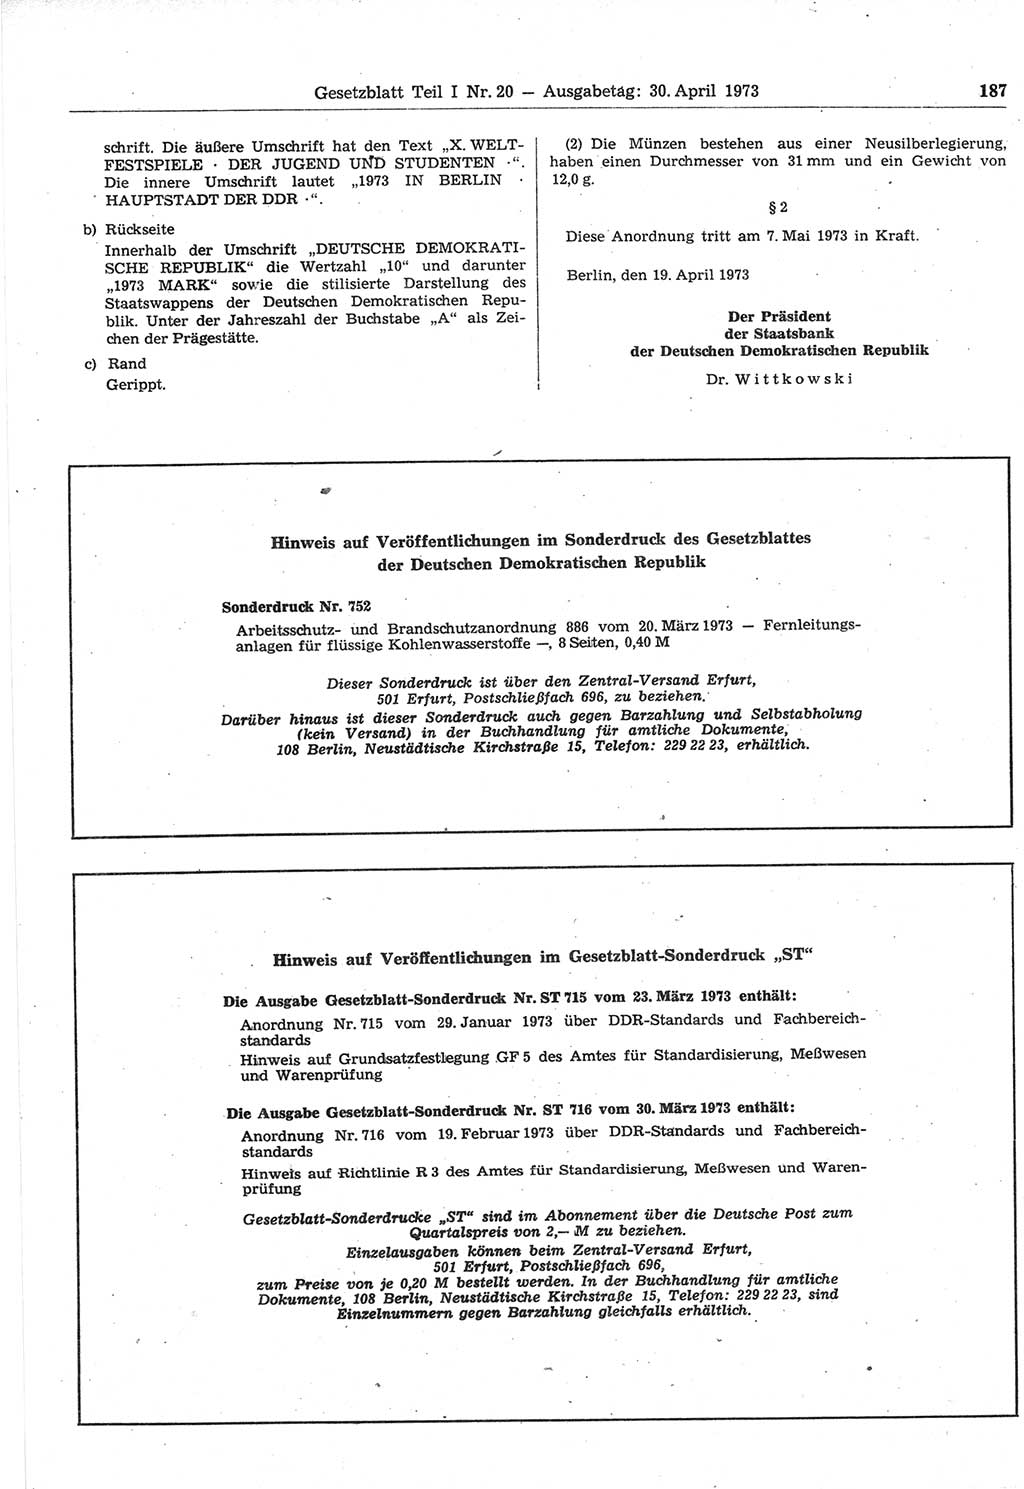 Gesetzblatt (GBl.) der Deutschen Demokratischen Republik (DDR) Teil Ⅰ 1973, Seite 187 (GBl. DDR Ⅰ 1973, S. 187)